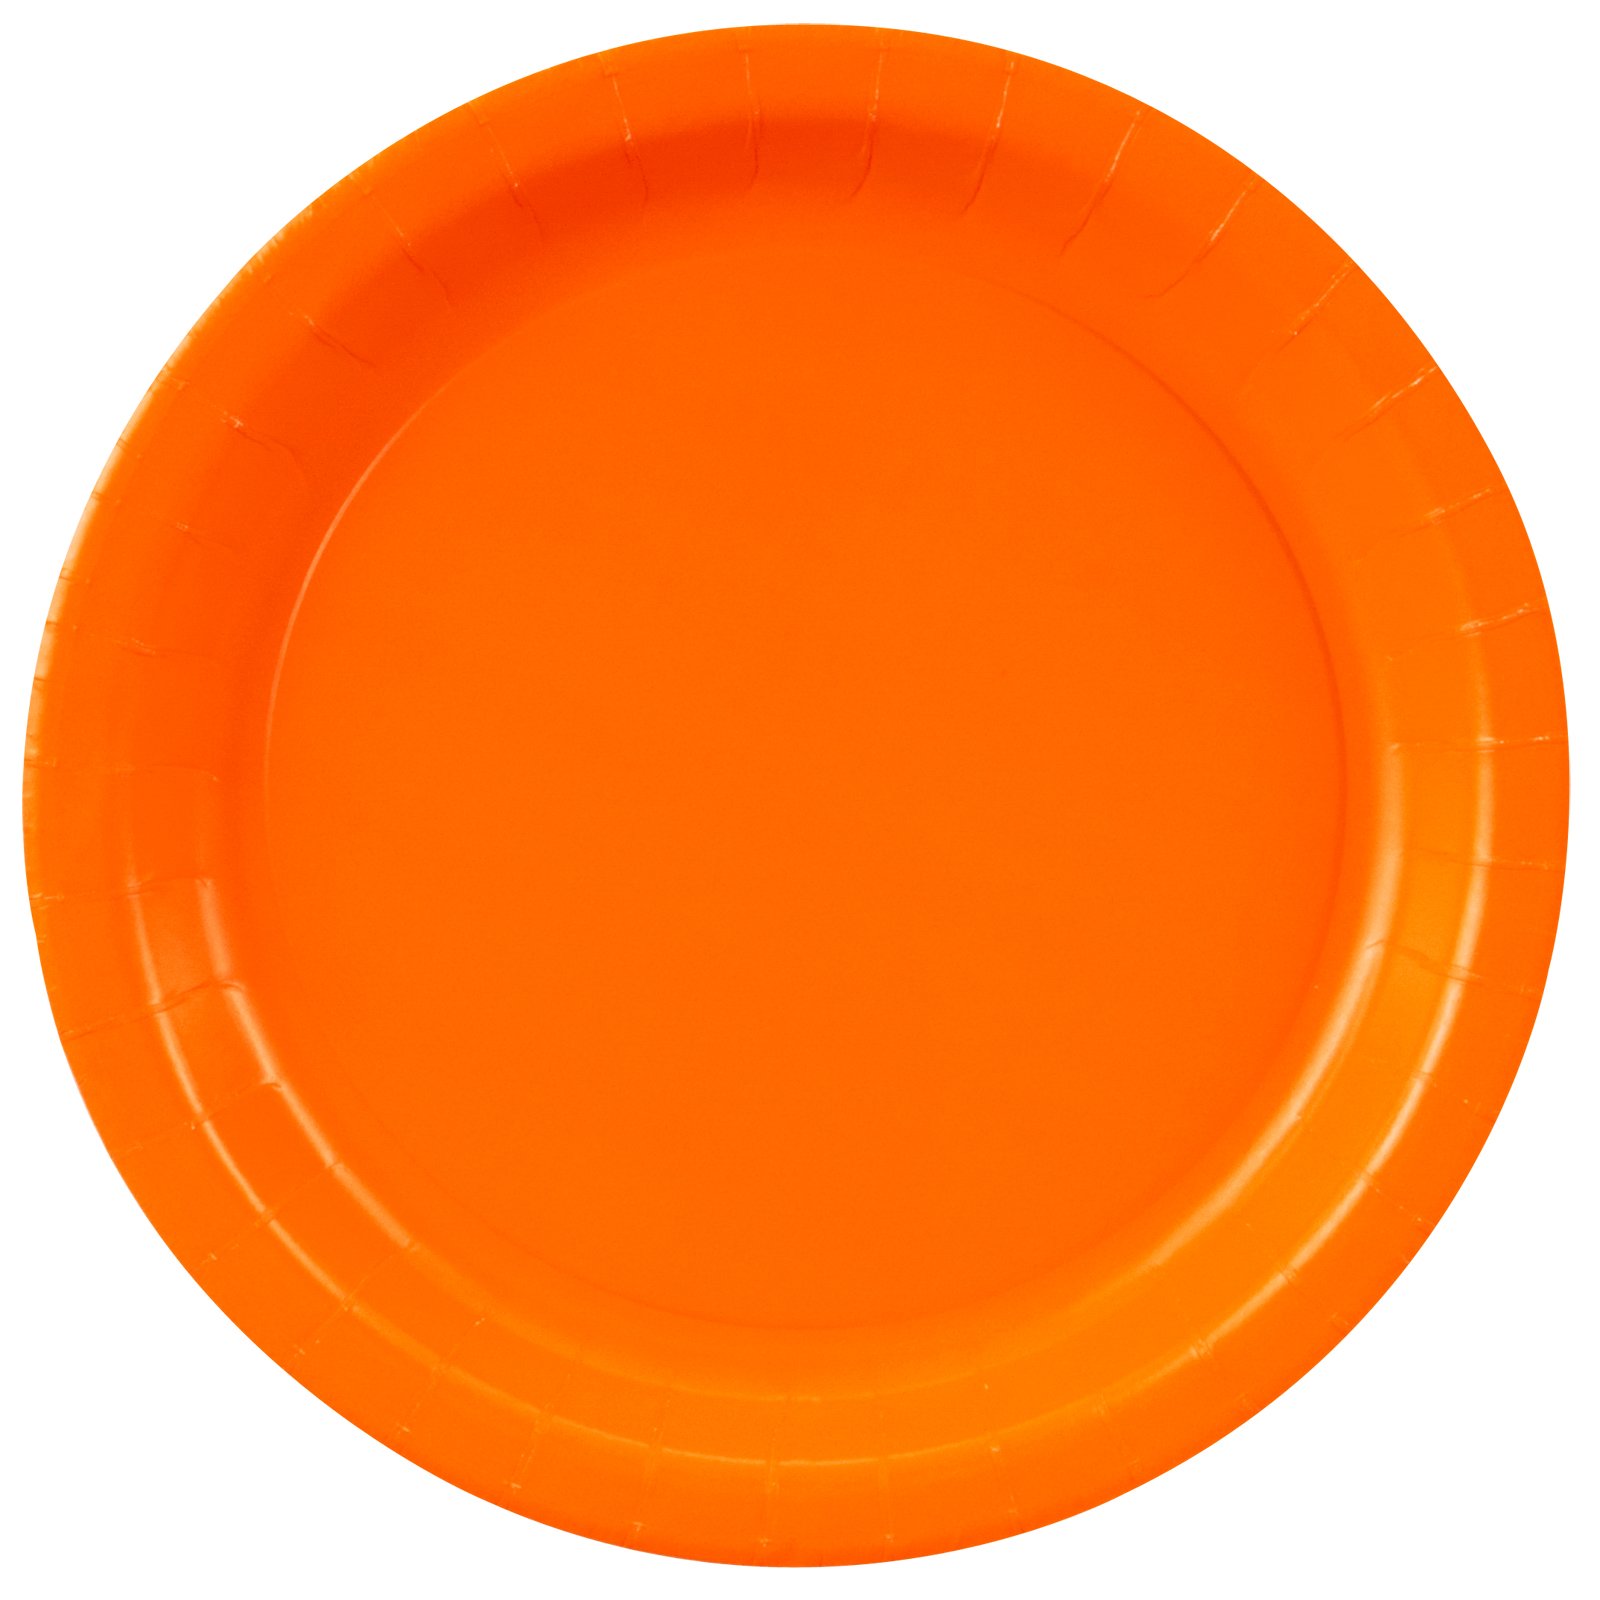 Sunkissed Orange (Orange) Dinner Plates (24 count) - Click Image to Close